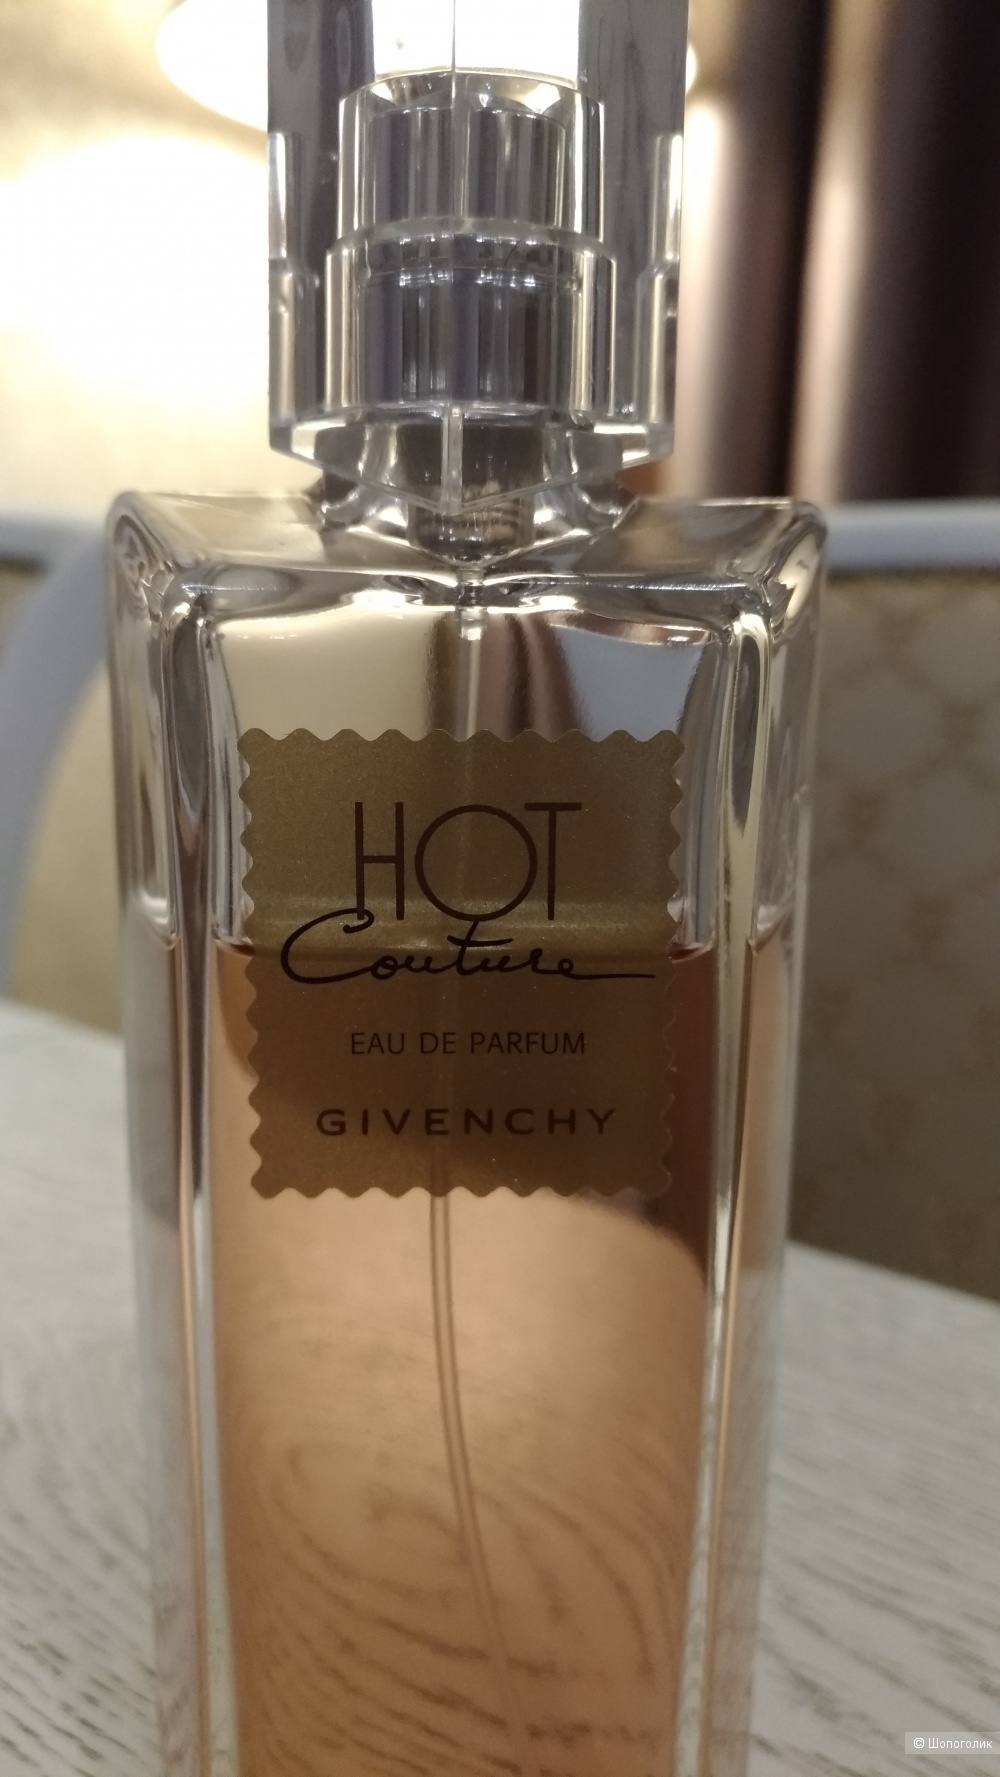 Парфюм Hot Couture Eau de Parfum, Givenchy -ПВ-100 мл